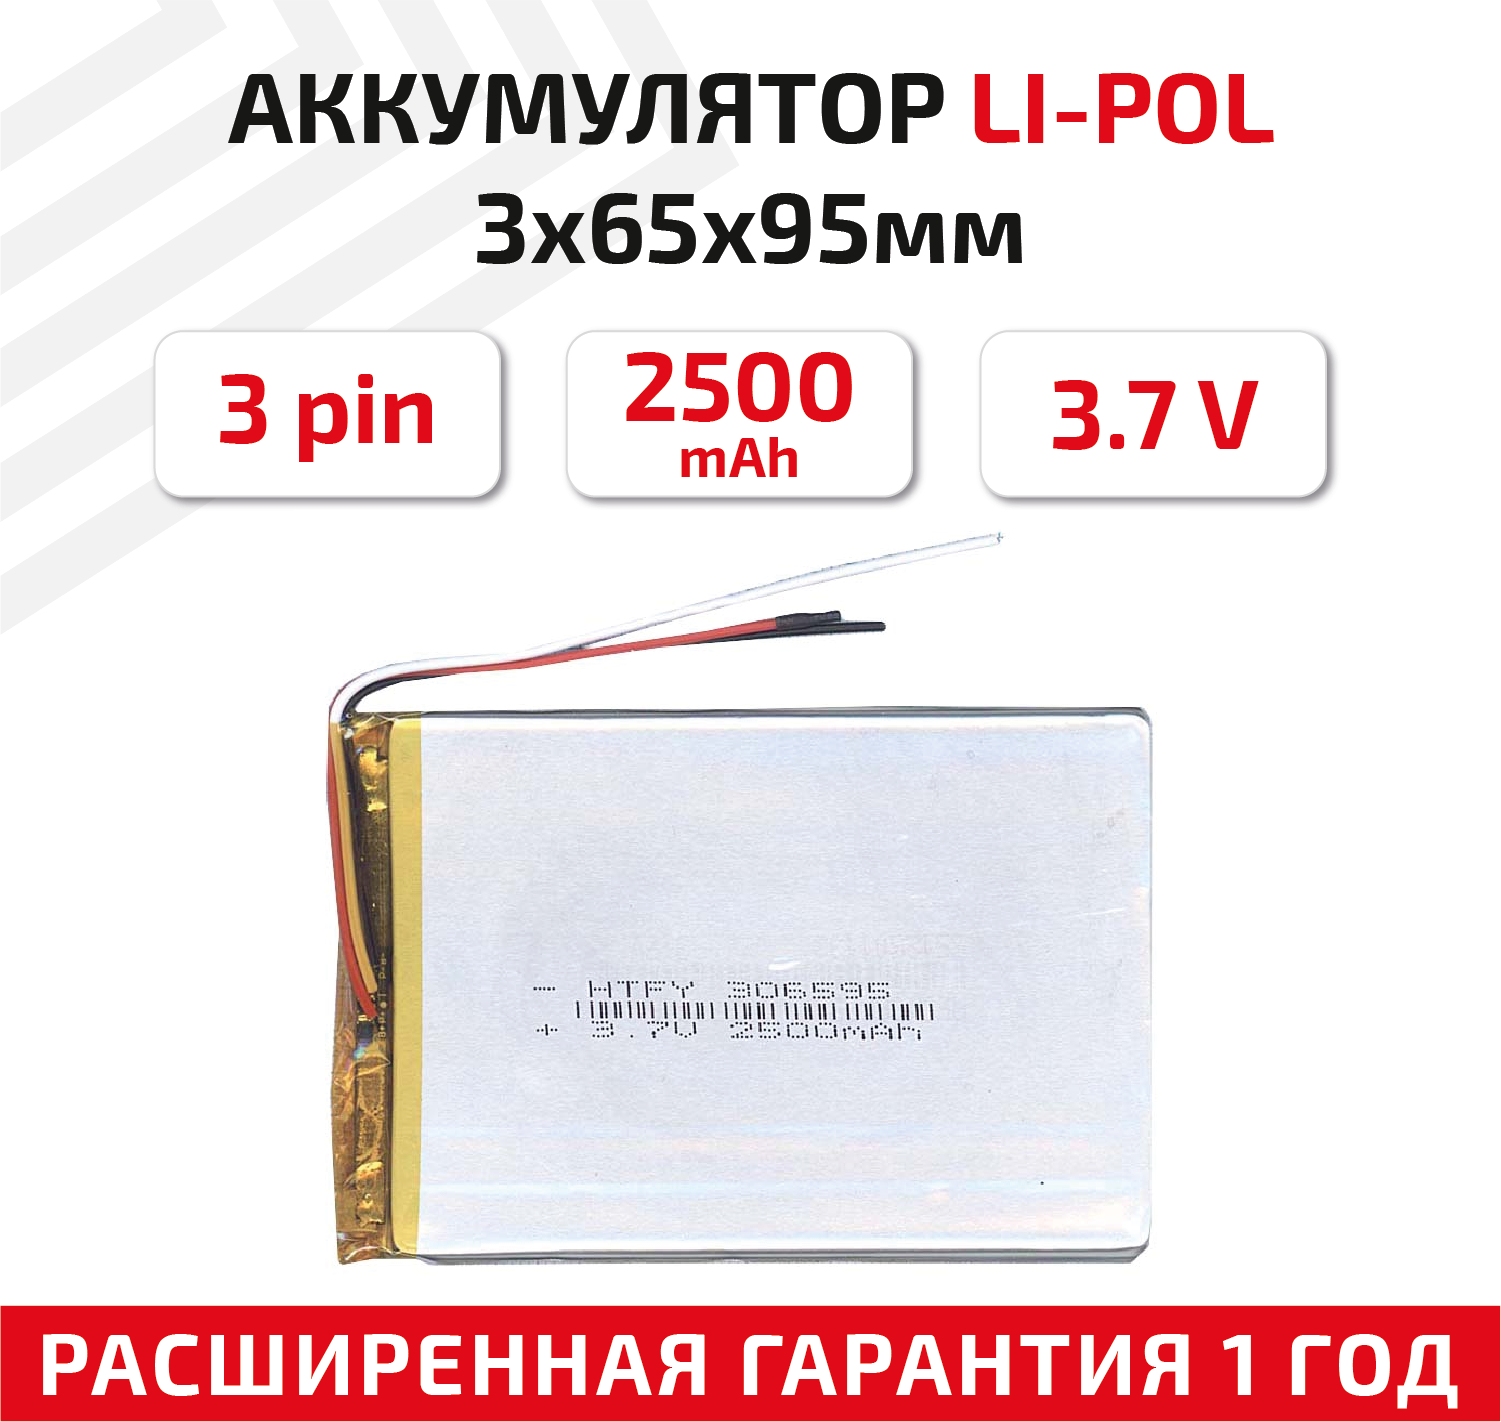 Универсальный аккумулятор (АКБ) для планшета, видеорегистратора и др, 3х65х95мм, 2500мАч, 3.7В, Li-Pol, 3-pin (на 3 провода)